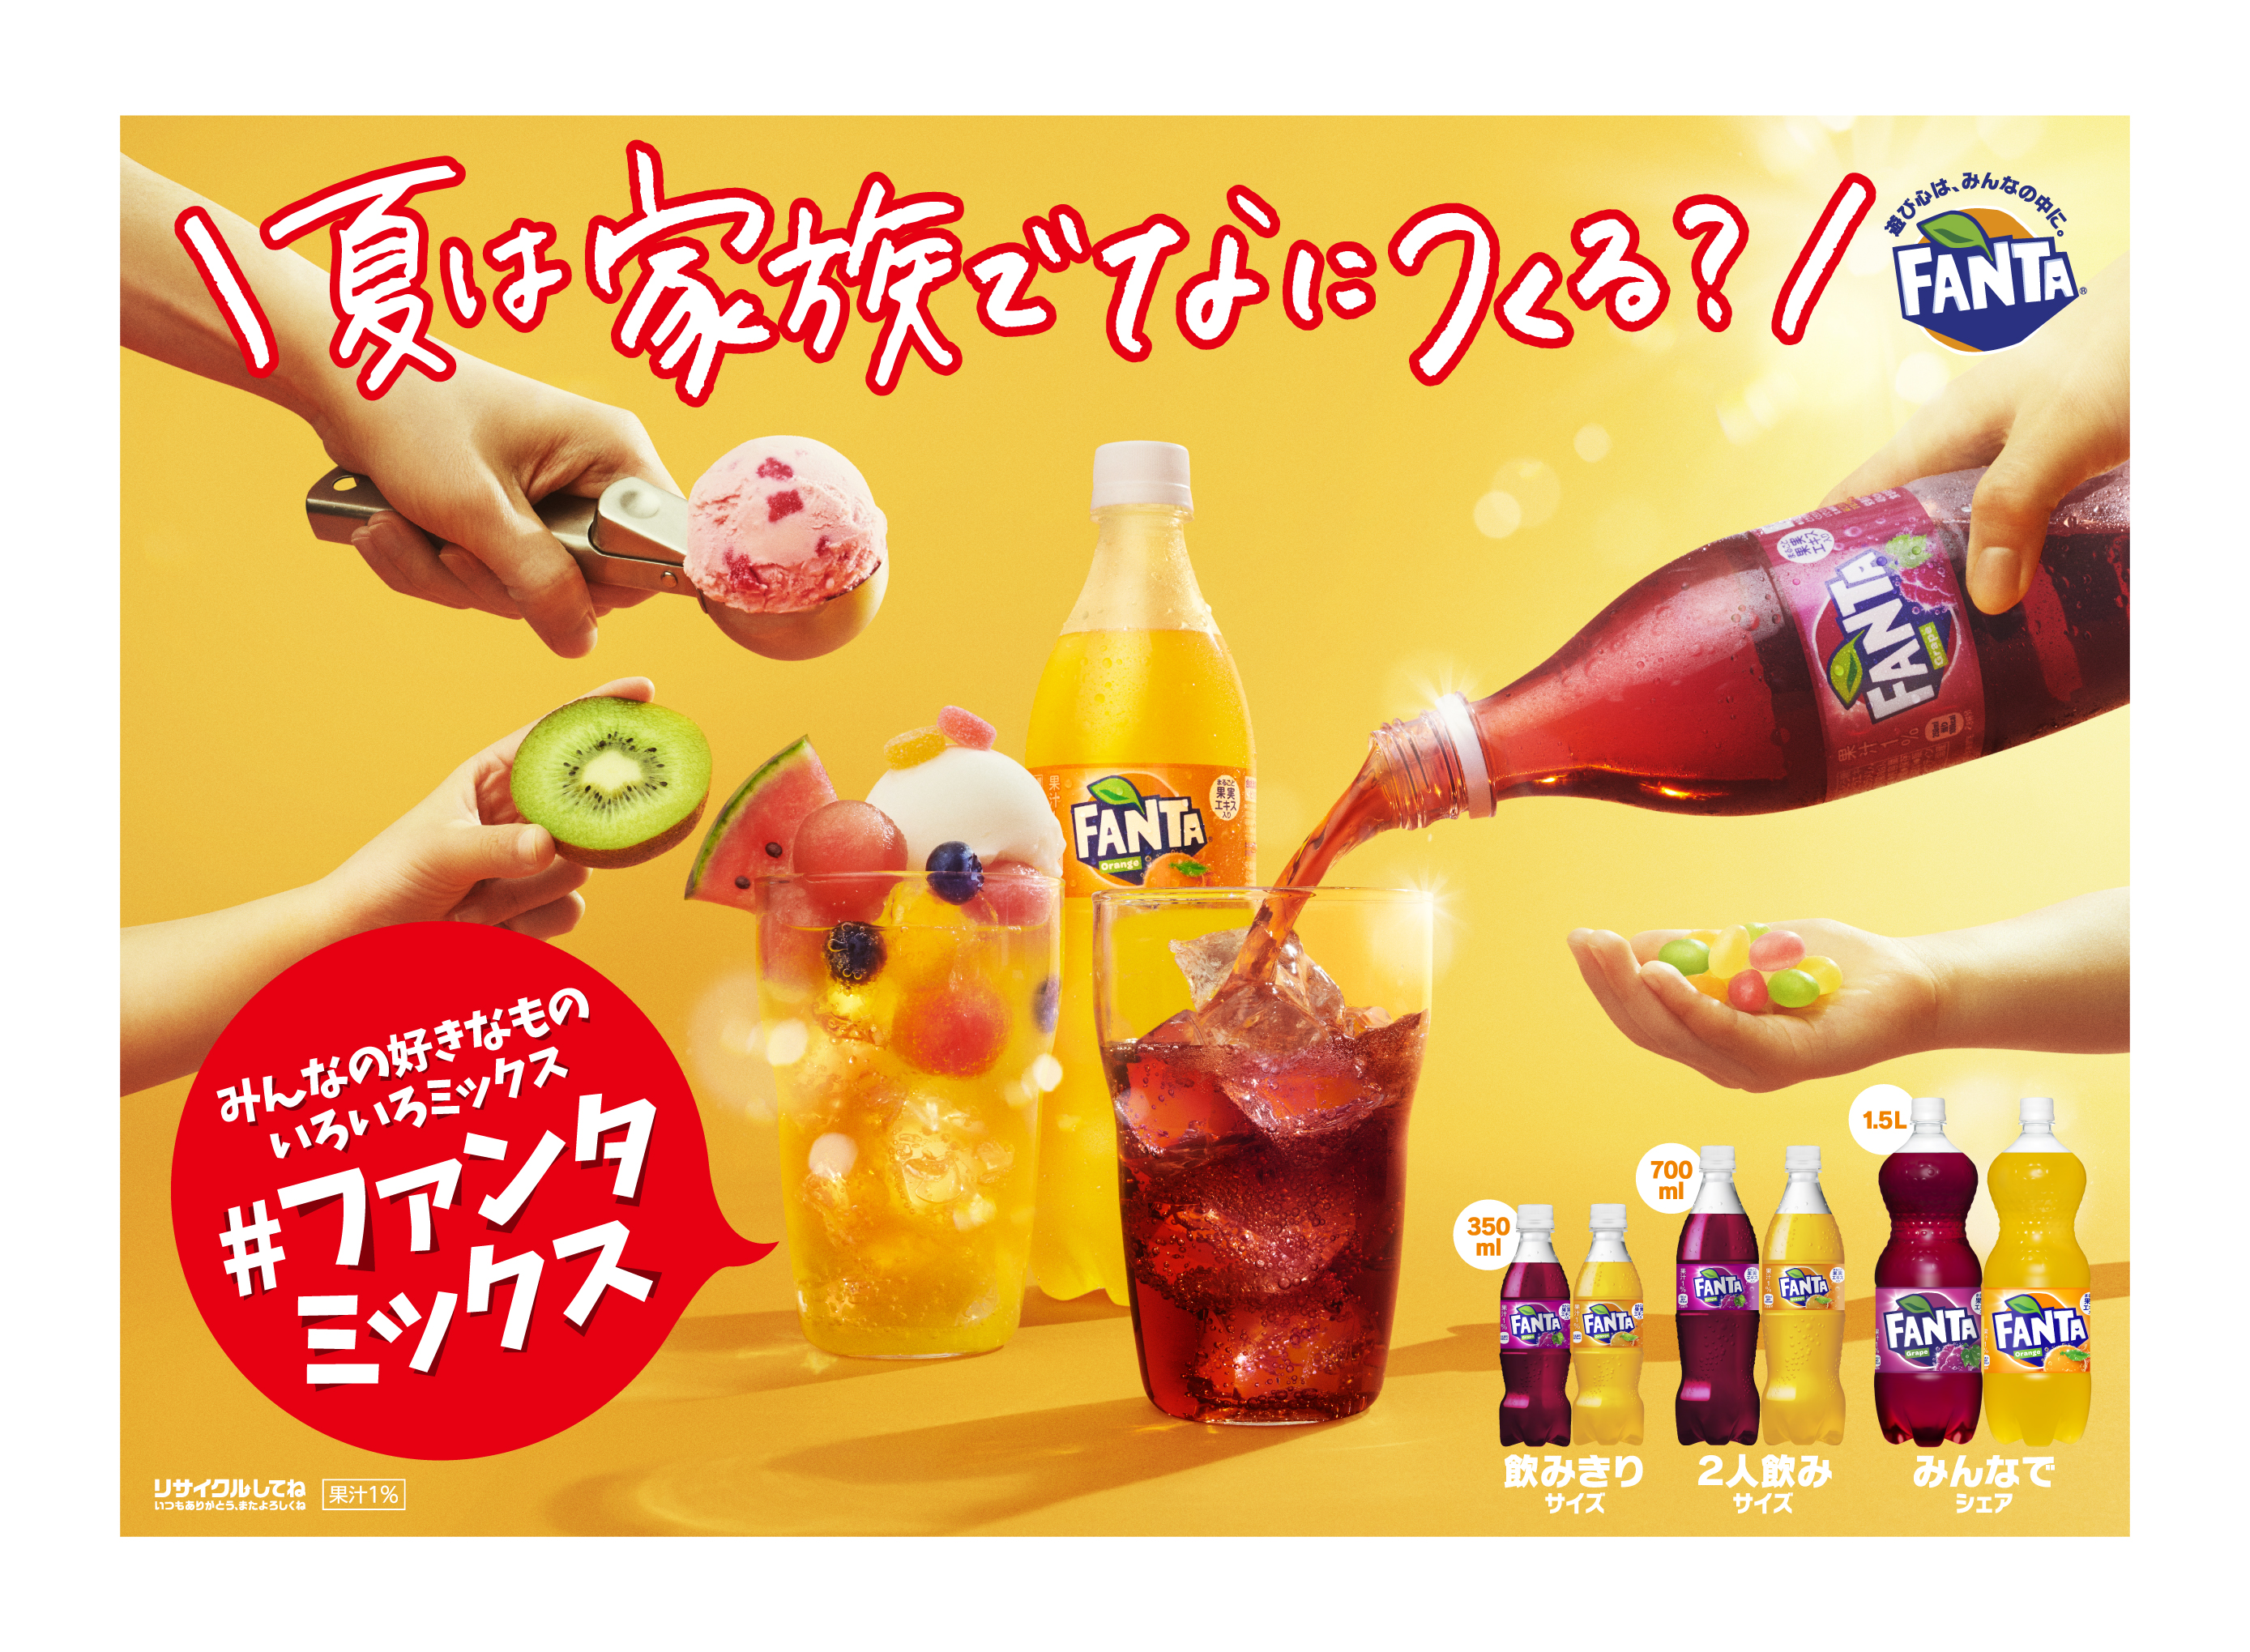 カラフルな炭酸の刺激とおいしさで みんなが笑顔に ファンタ 夏は家族でなにつくる ファンタミックス キャンペーン 日本コカ コーラ株式会社のプレスリリース